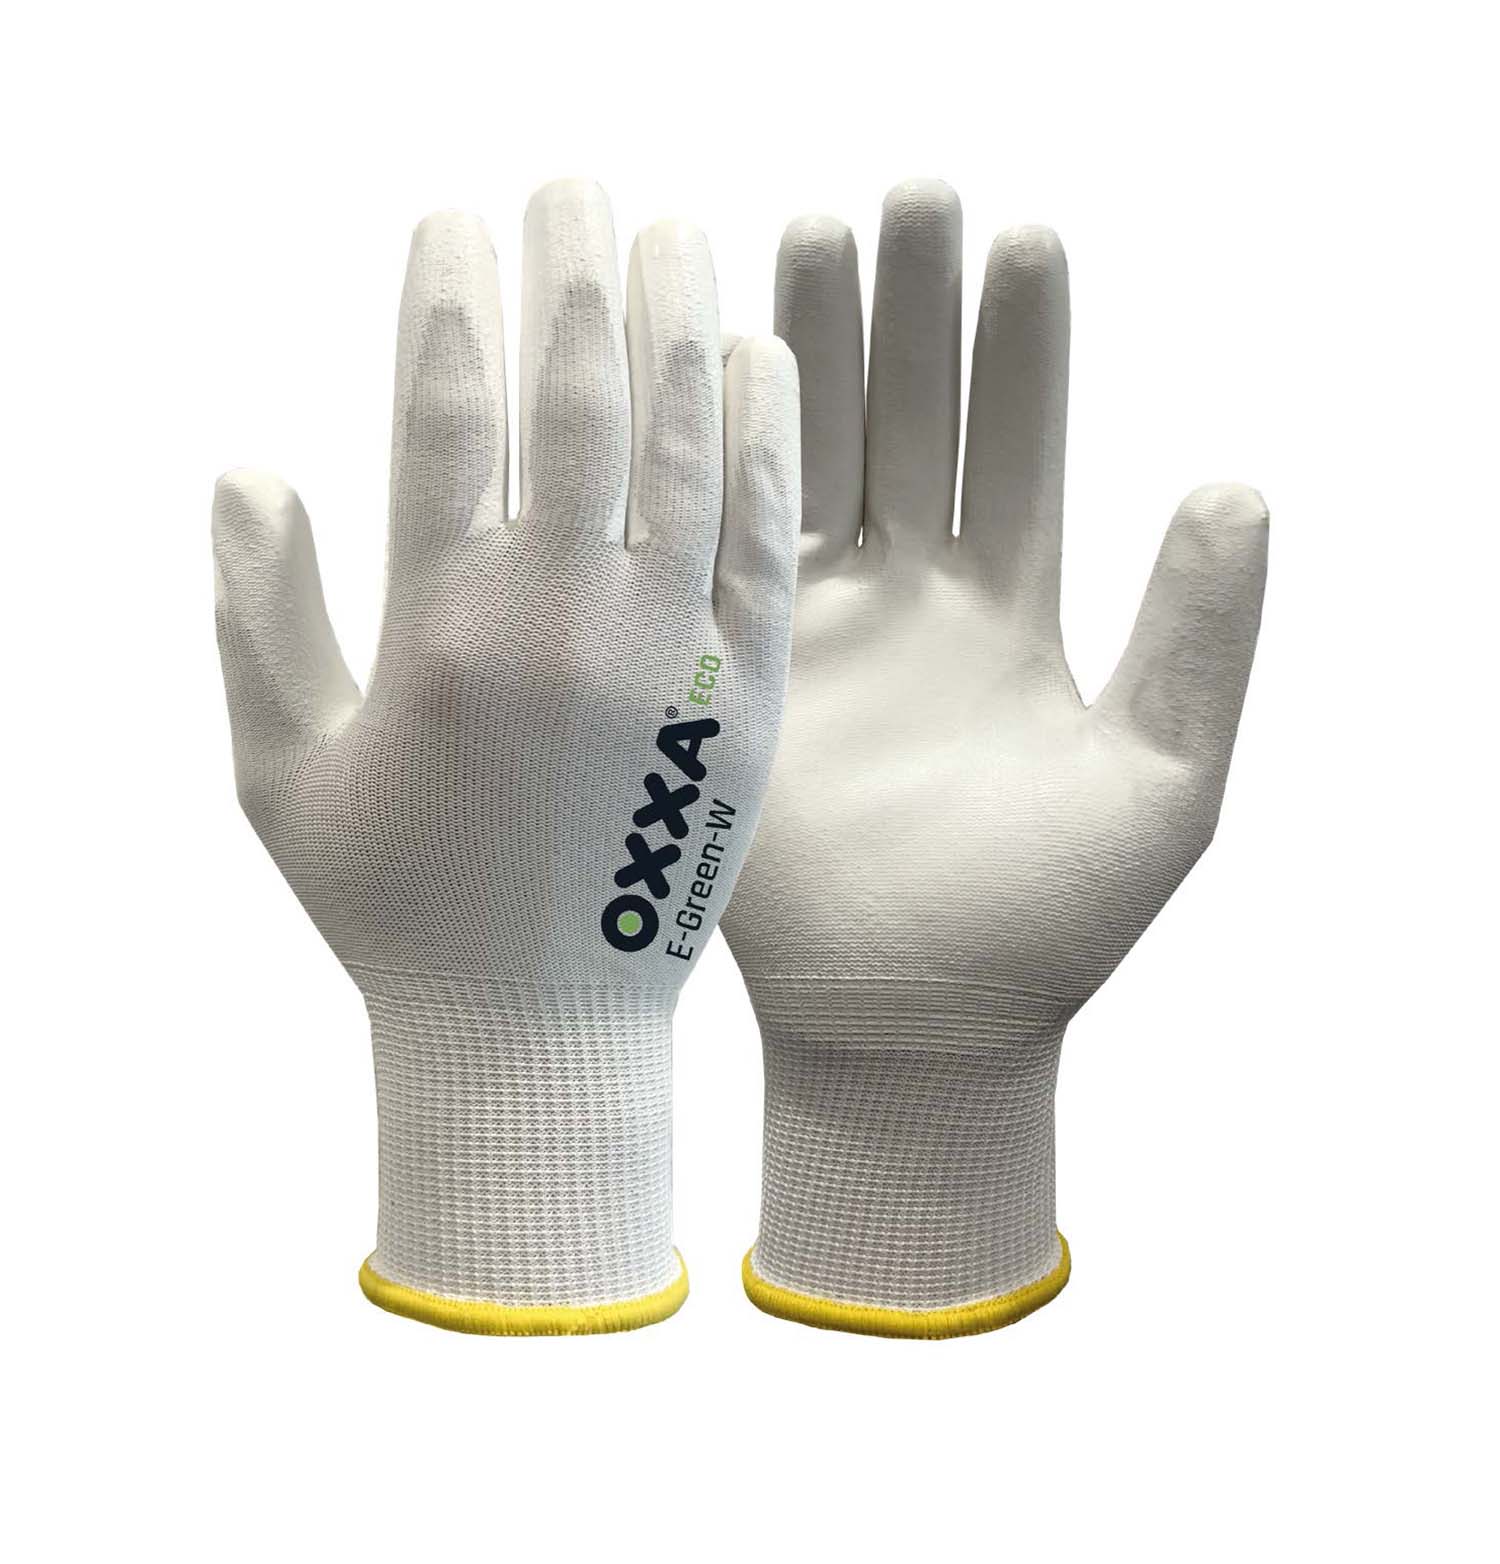 SG06152 Oxxa E-Green-W 52-100 handschoenen Comfortabele, vingergevoelige handschoen.